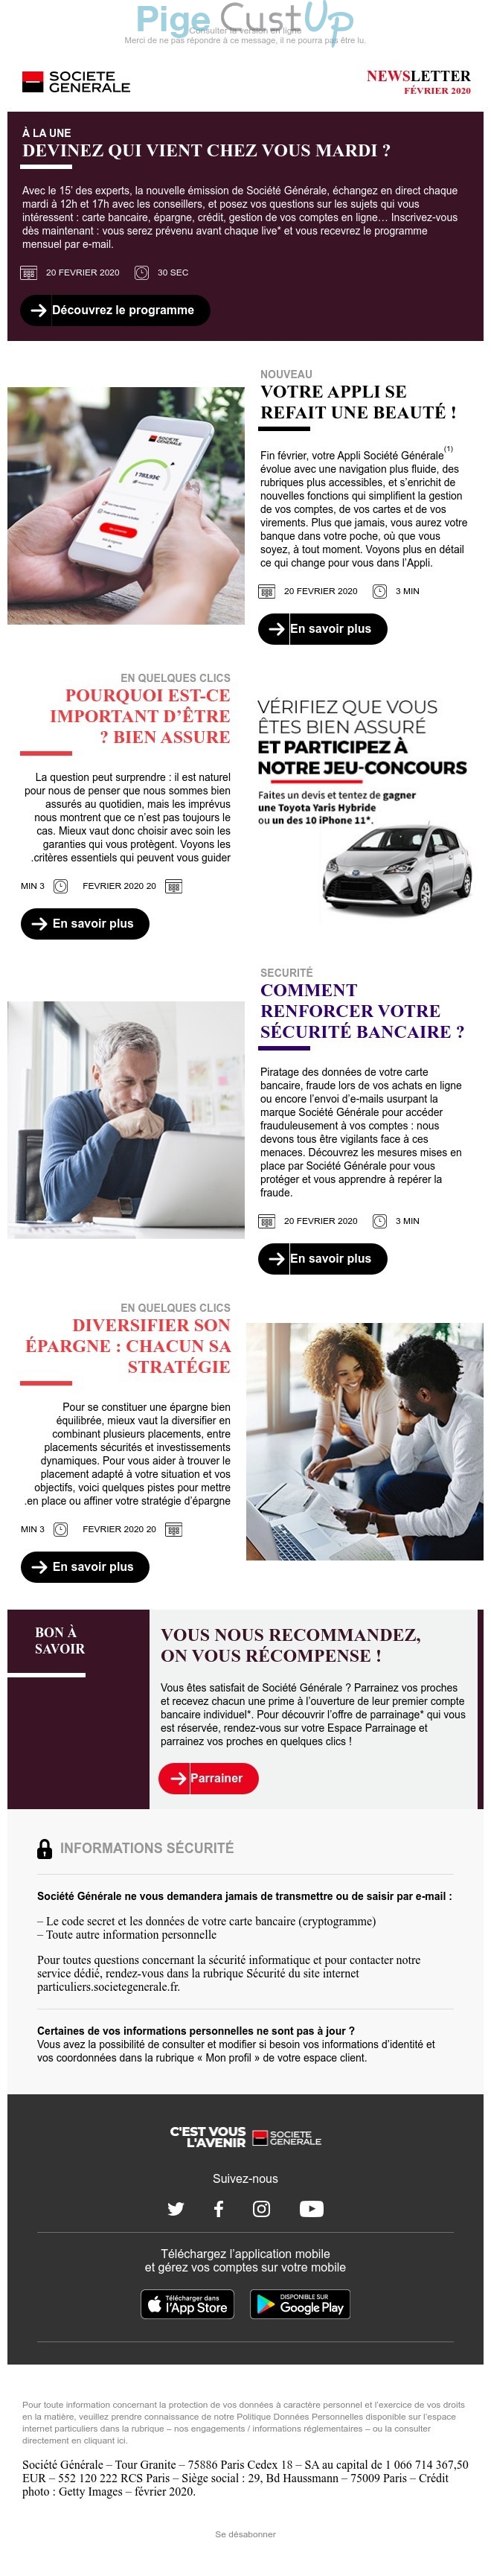 Exemple de Type de media  e-mailing - Société Générale - Marketing relationnel - Evénement - Newsletter - Marketing Acquisition - Parrainage